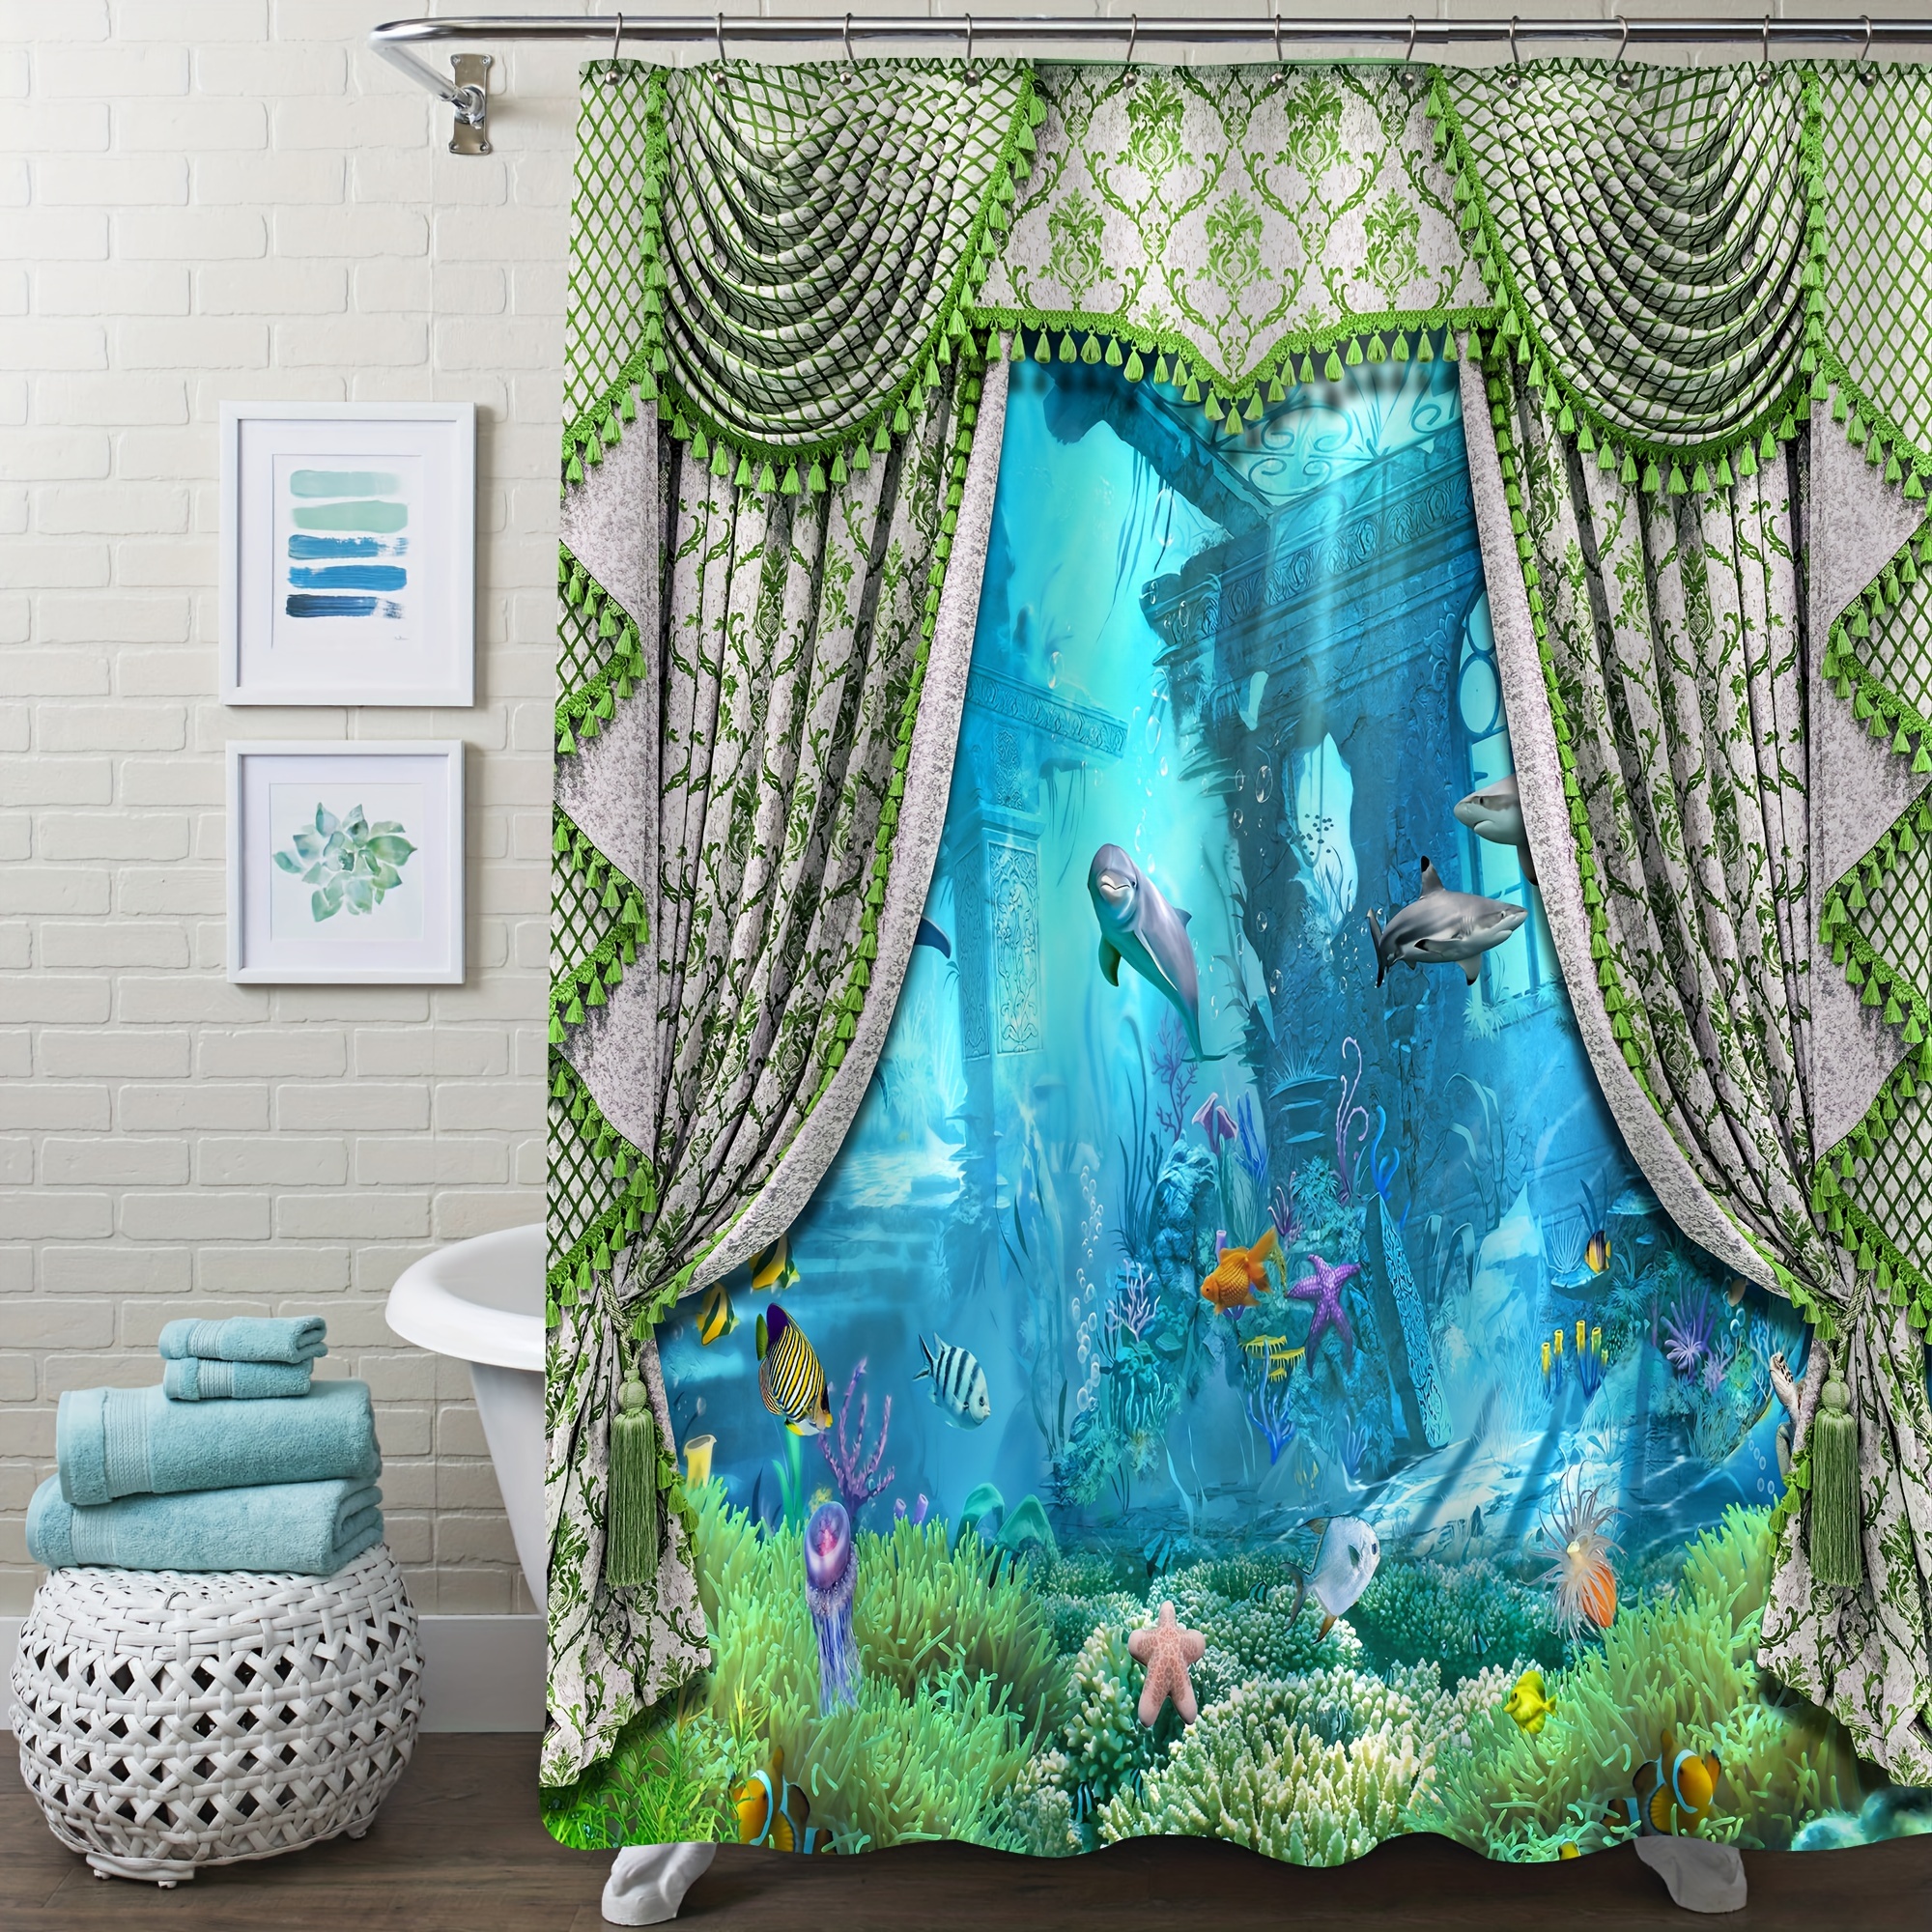 Cortina para baño de poliéster decorativa con motivos submarinos, cortina  para regadera resistente al moho, cortinas para baño con motivos marinos